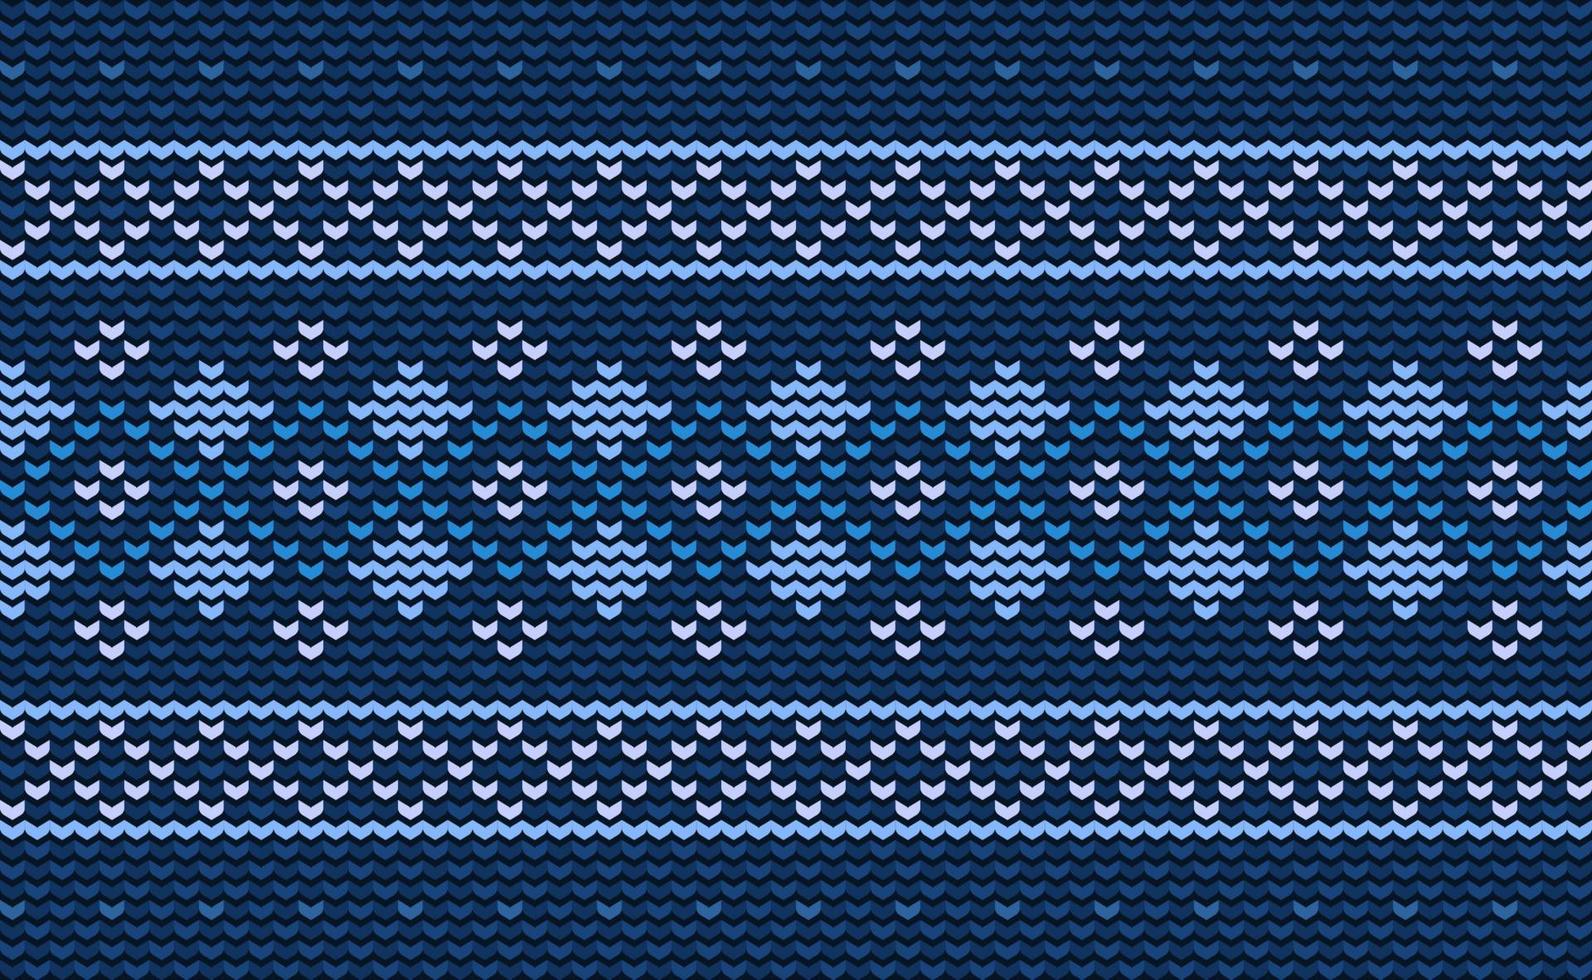 häkeln Muster, Vektor Kreuz Stich Boho Hintergrund, gestrickt ethnisch diagonal orientalisch Stil